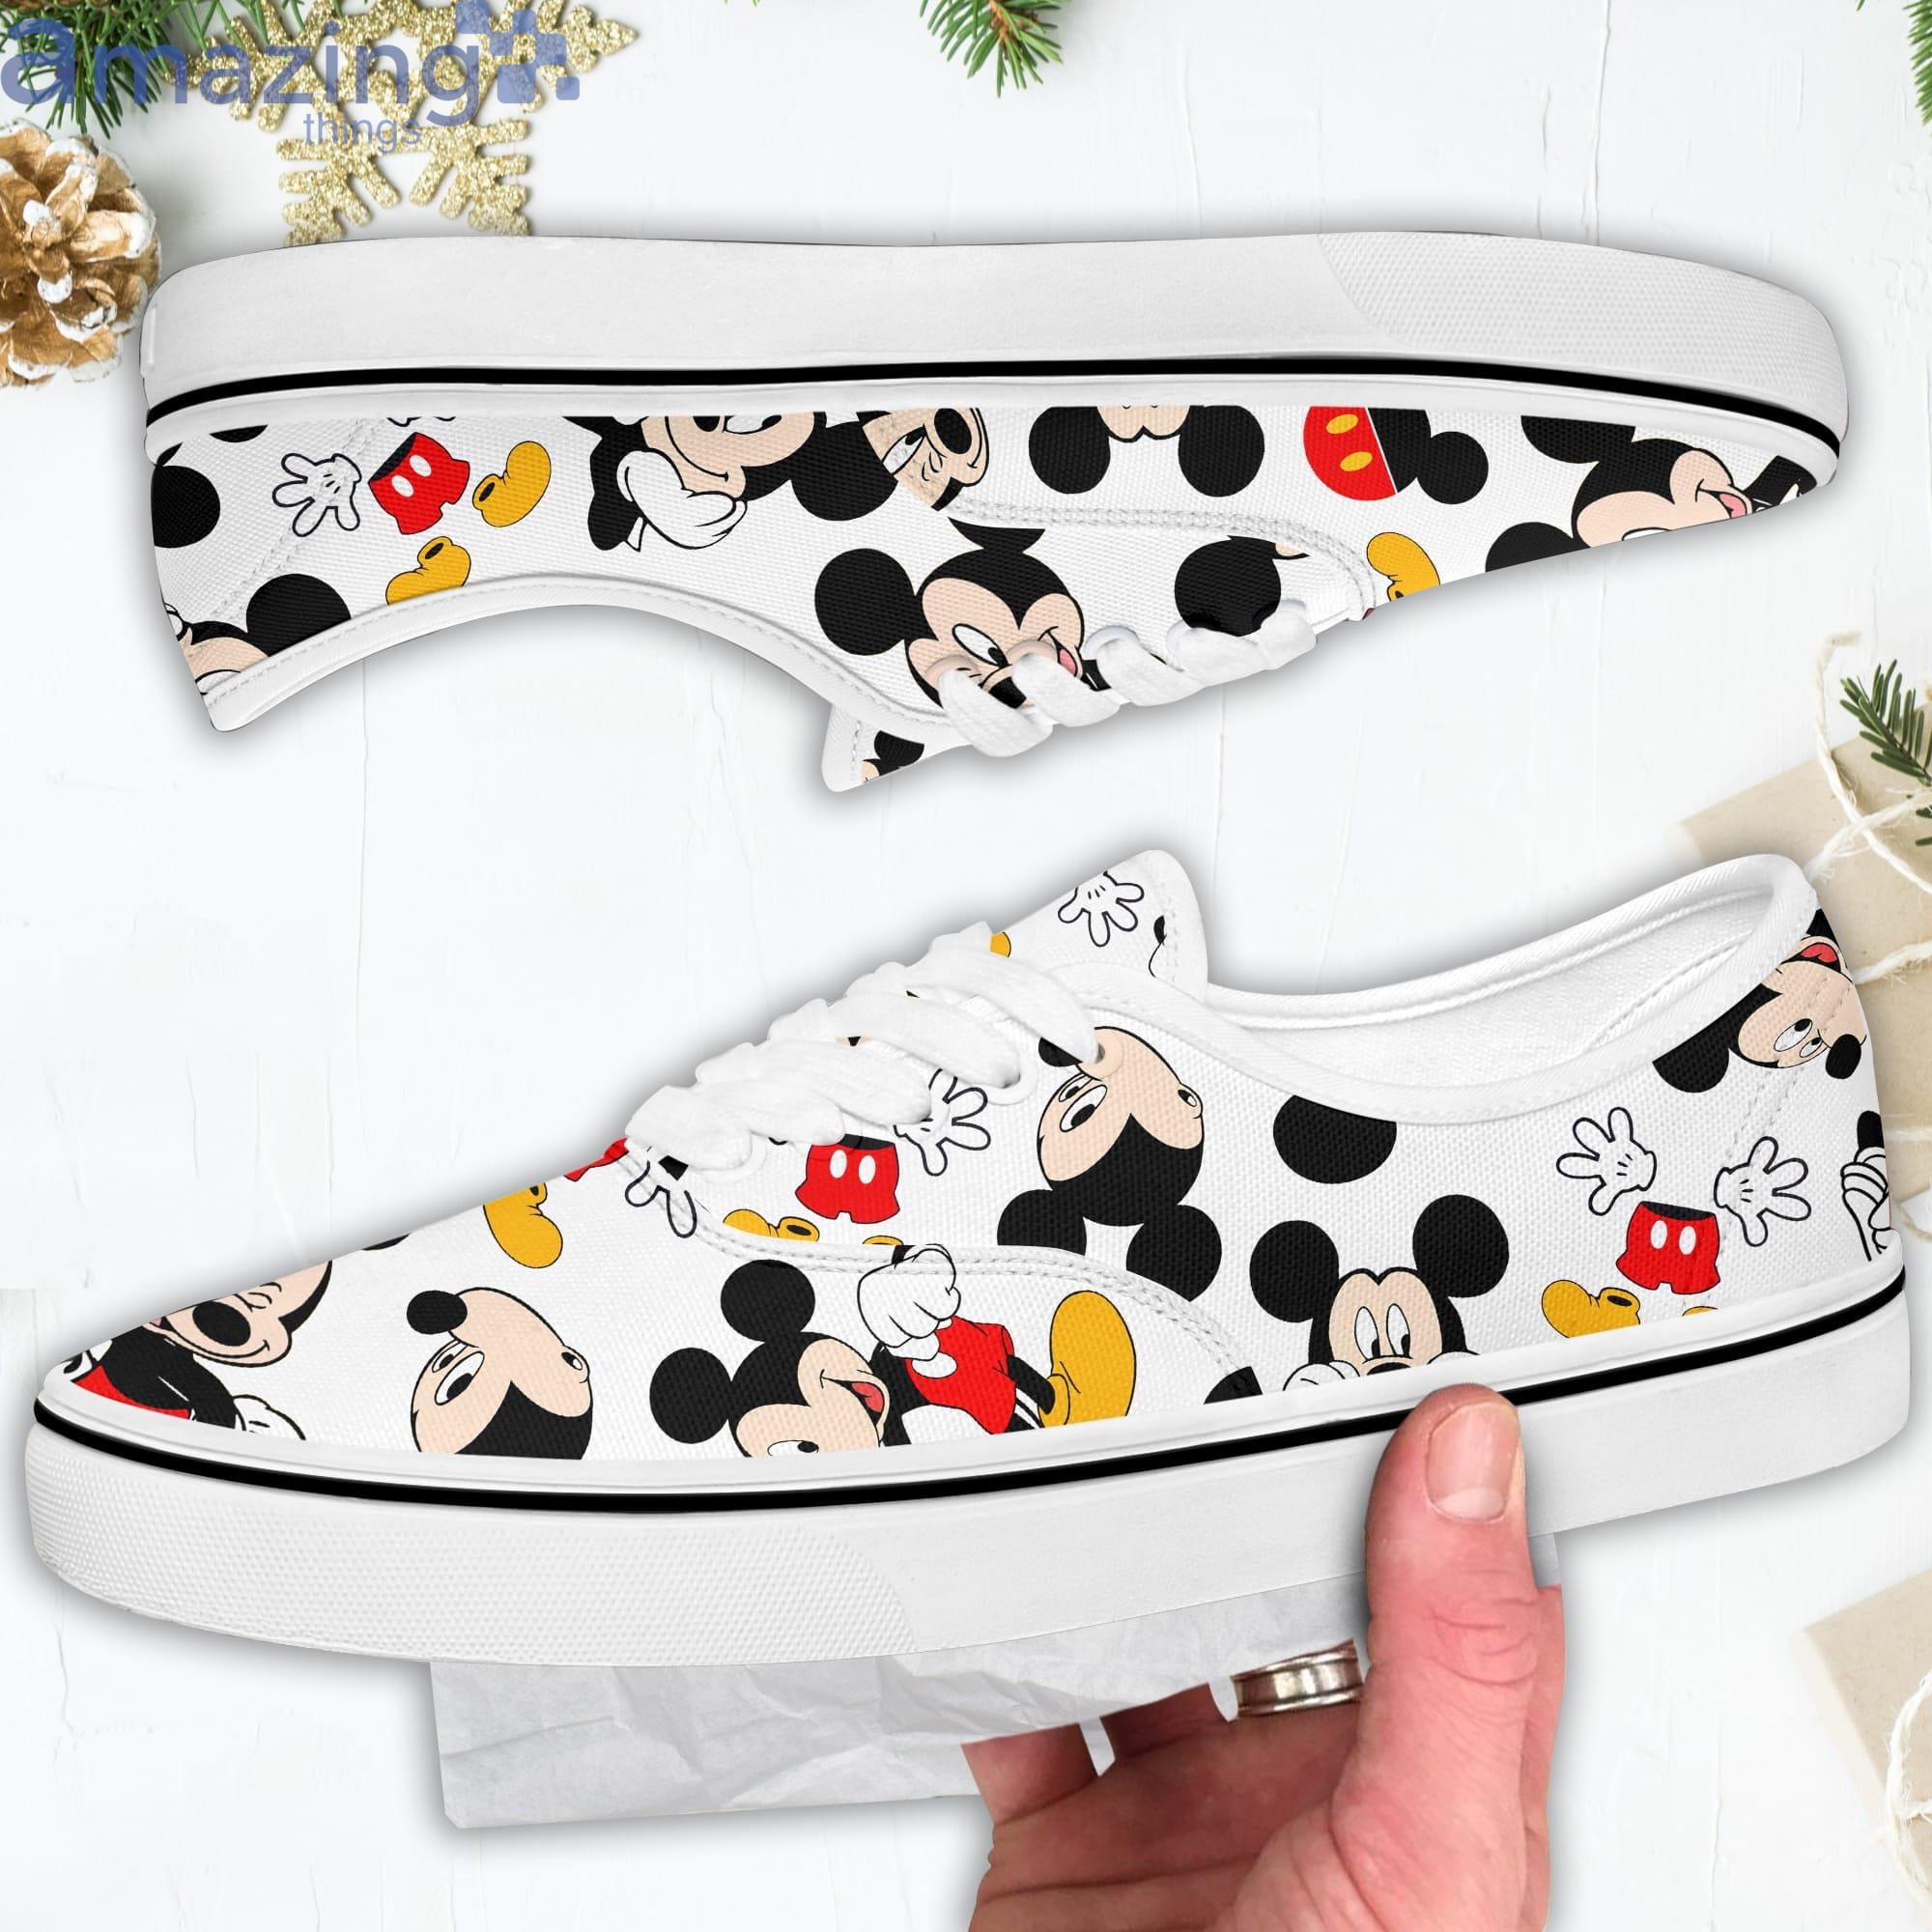 ik ben gelukkig zoet Articulatie Mickey Mouse Reds Disney Cartoon Low Top Slip On Lace Up Canvas Vans Shoes